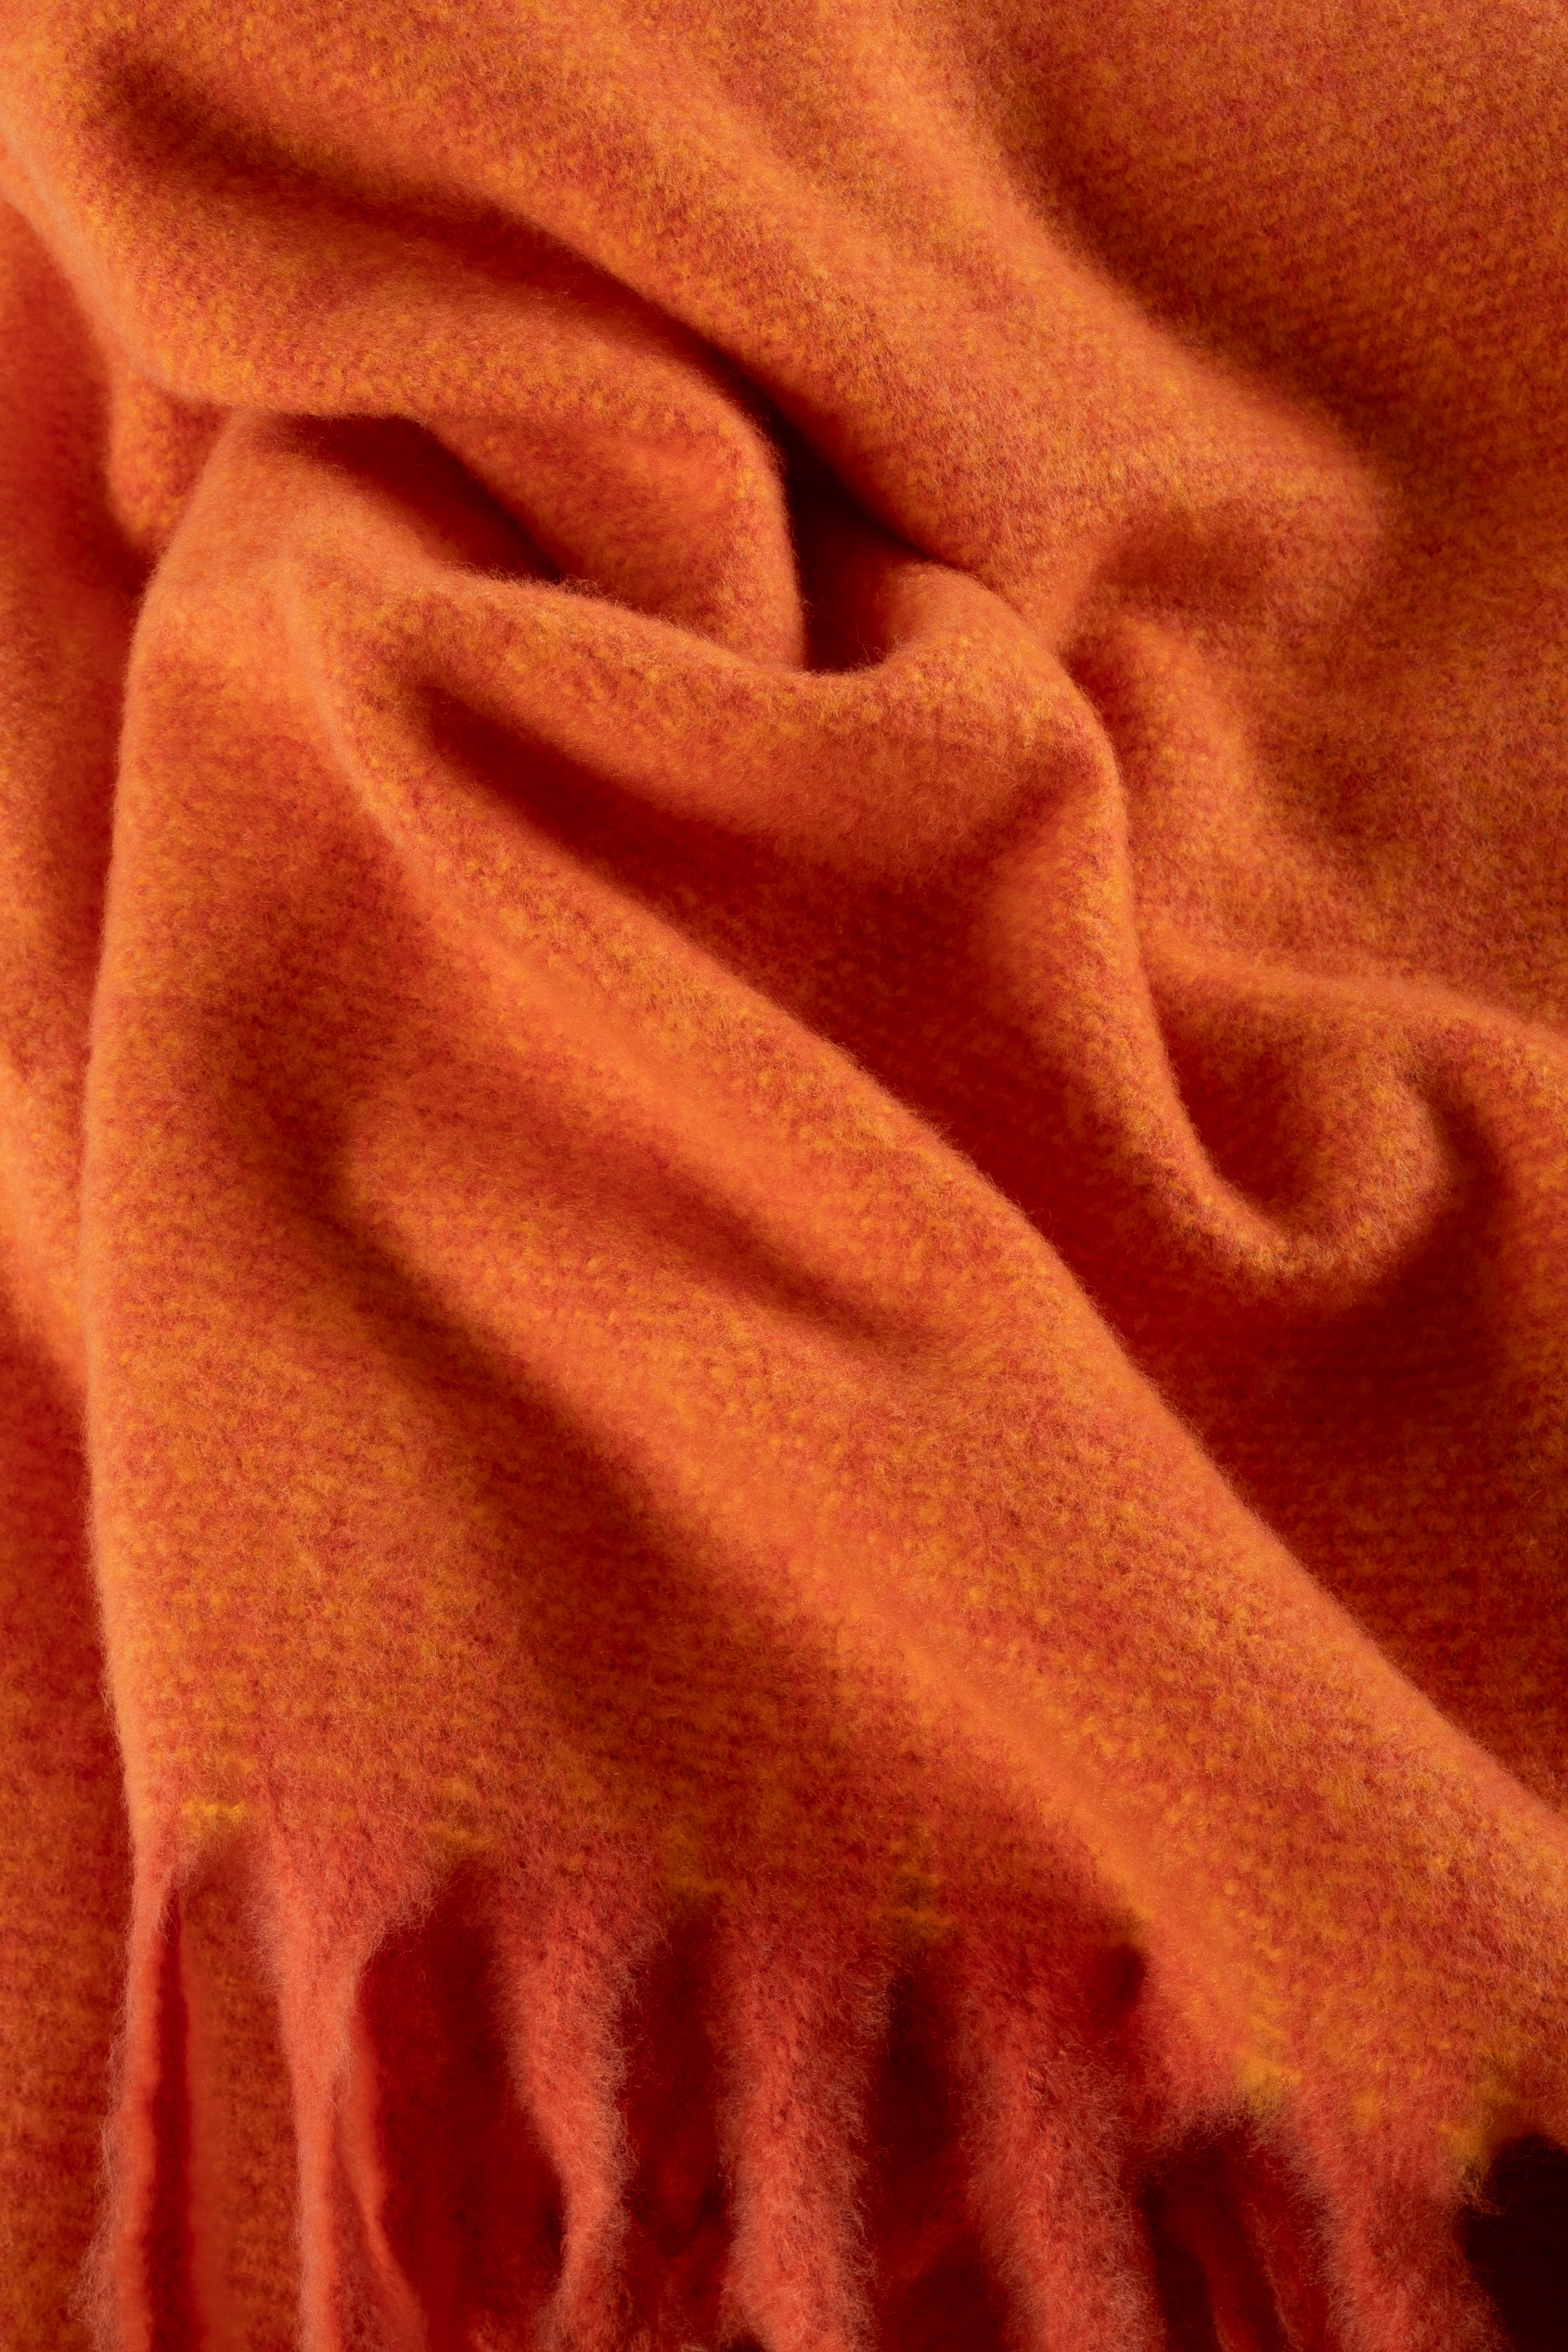 Stylowy szalik w pomarańczowym kolorze